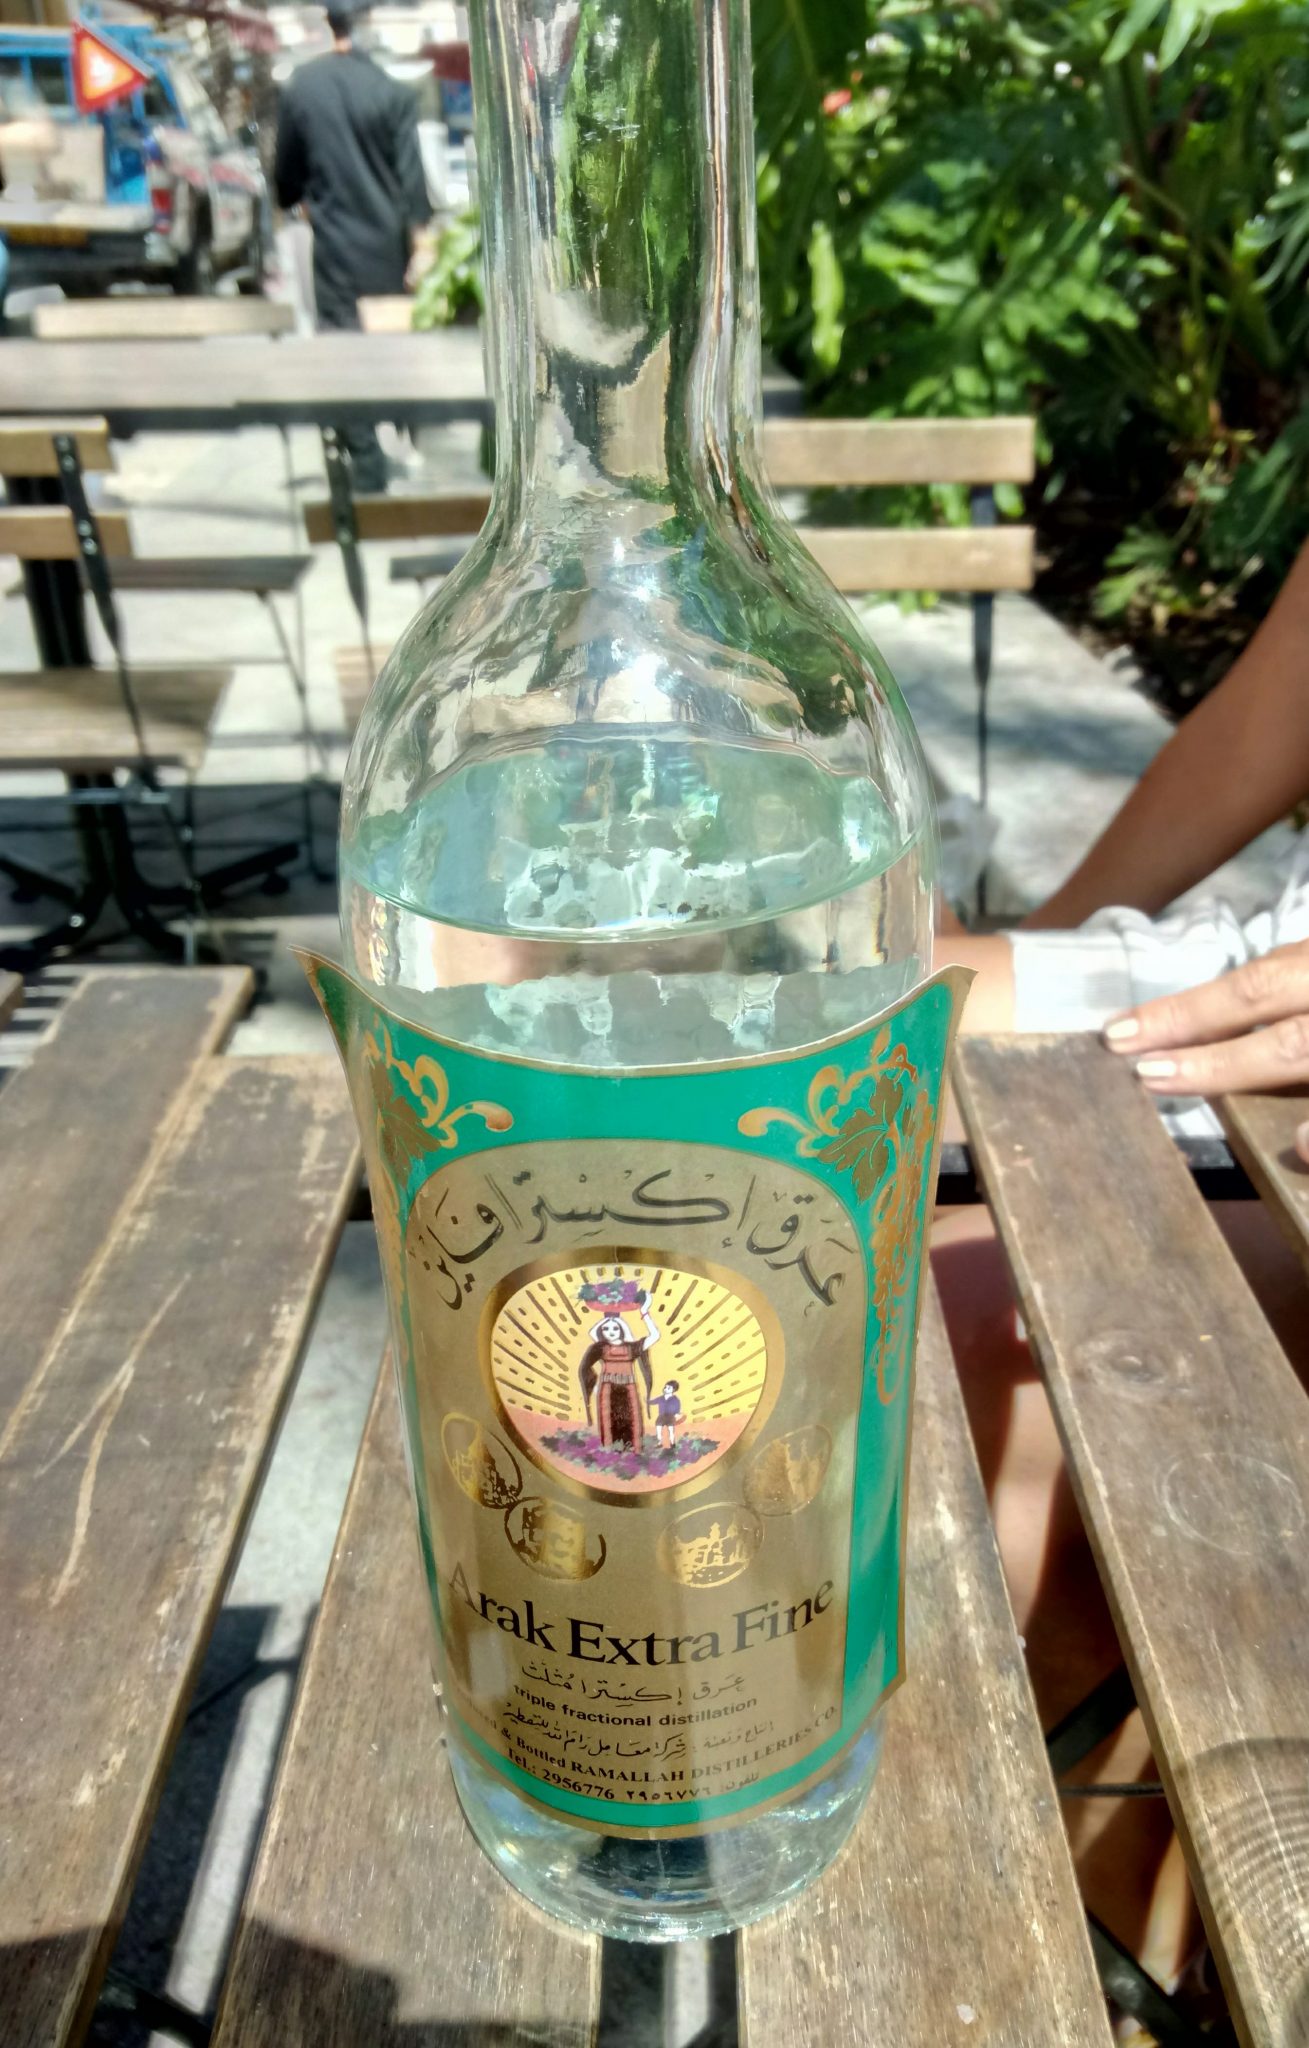 «Это лучший арак, который можно найти за пределами Ливана», - говорит Азиз Суйдан, указывая на бутылку с бирюзово-золотой этикеткой от ликеро-водочного завода Рамалла, на которой изображена женщина с корзиной, заполненной собранным виноградом